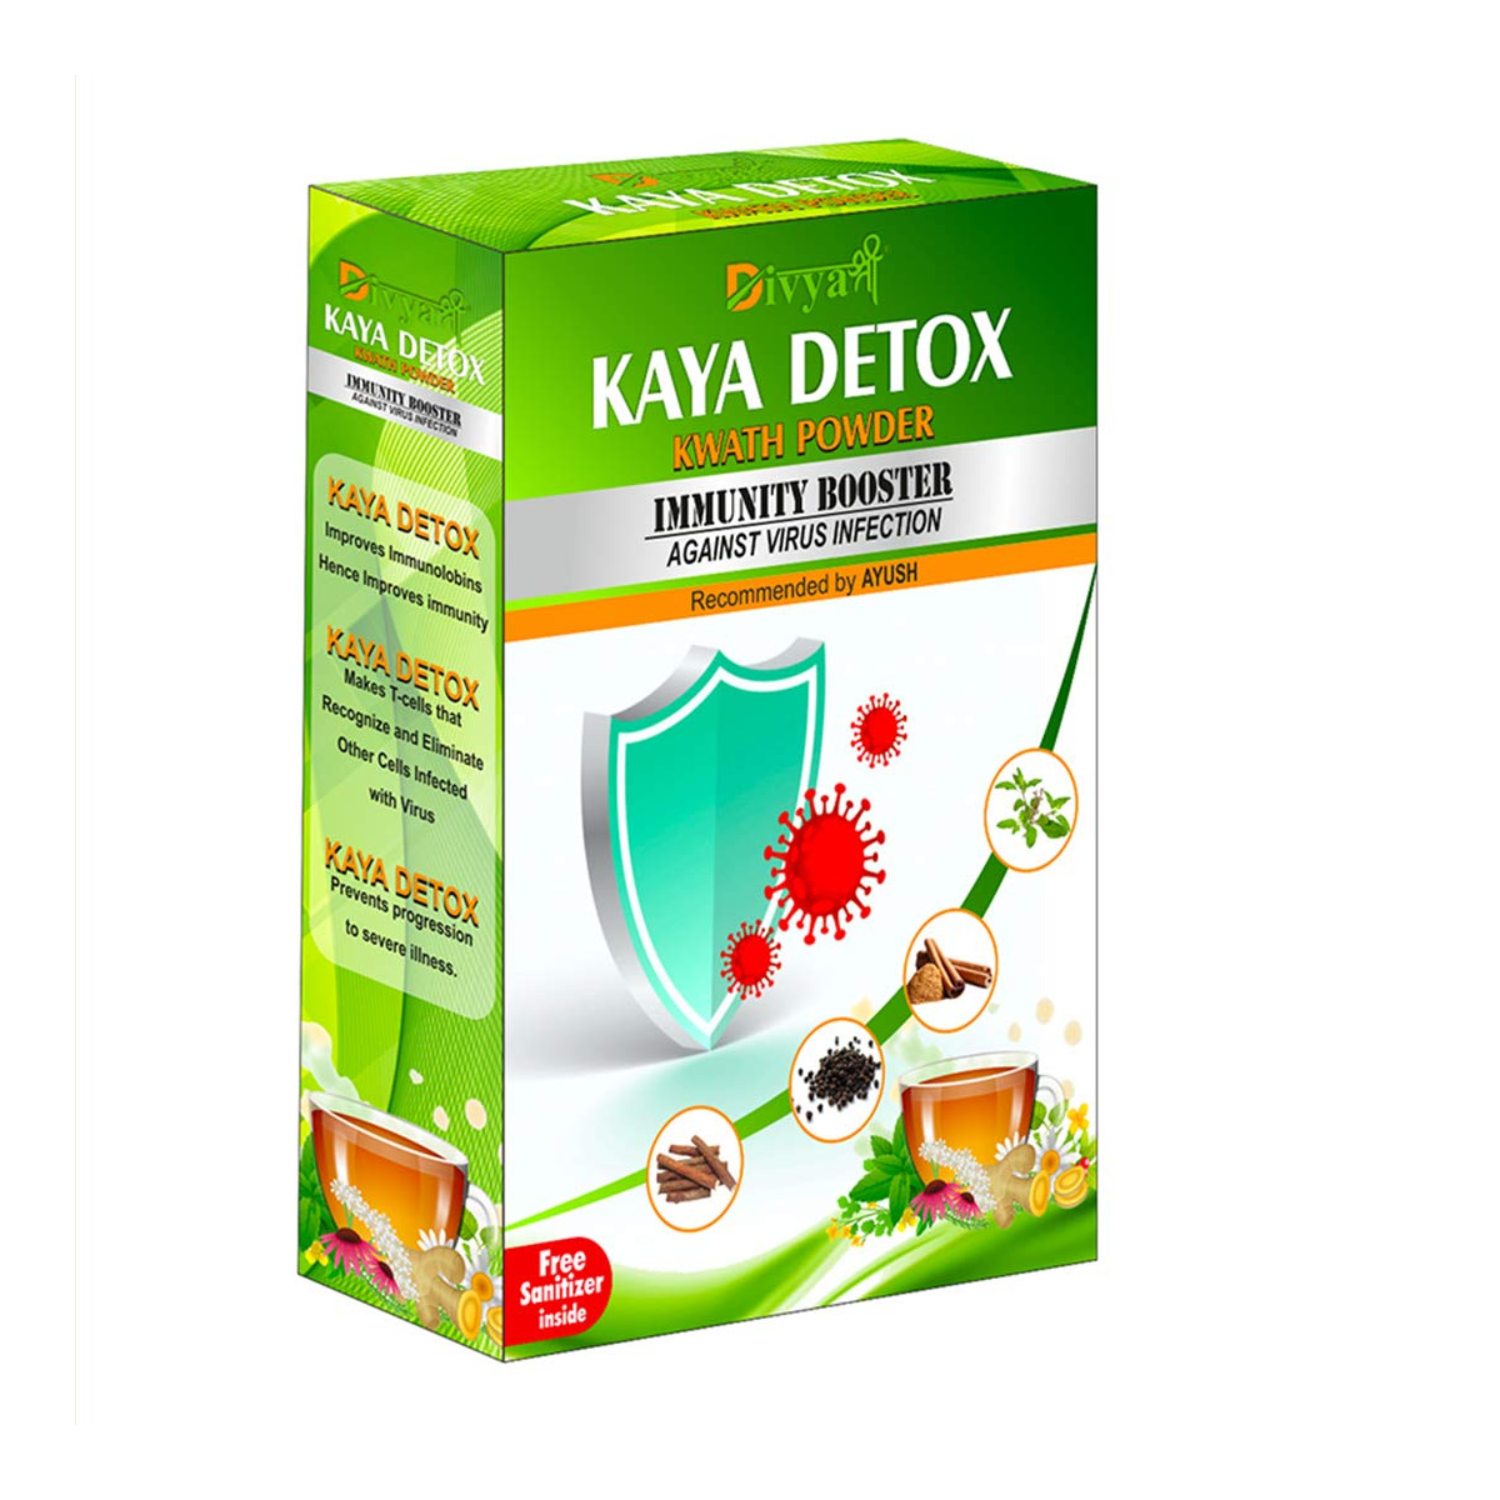 Divya Shree Kaya Detox Kwath Powder